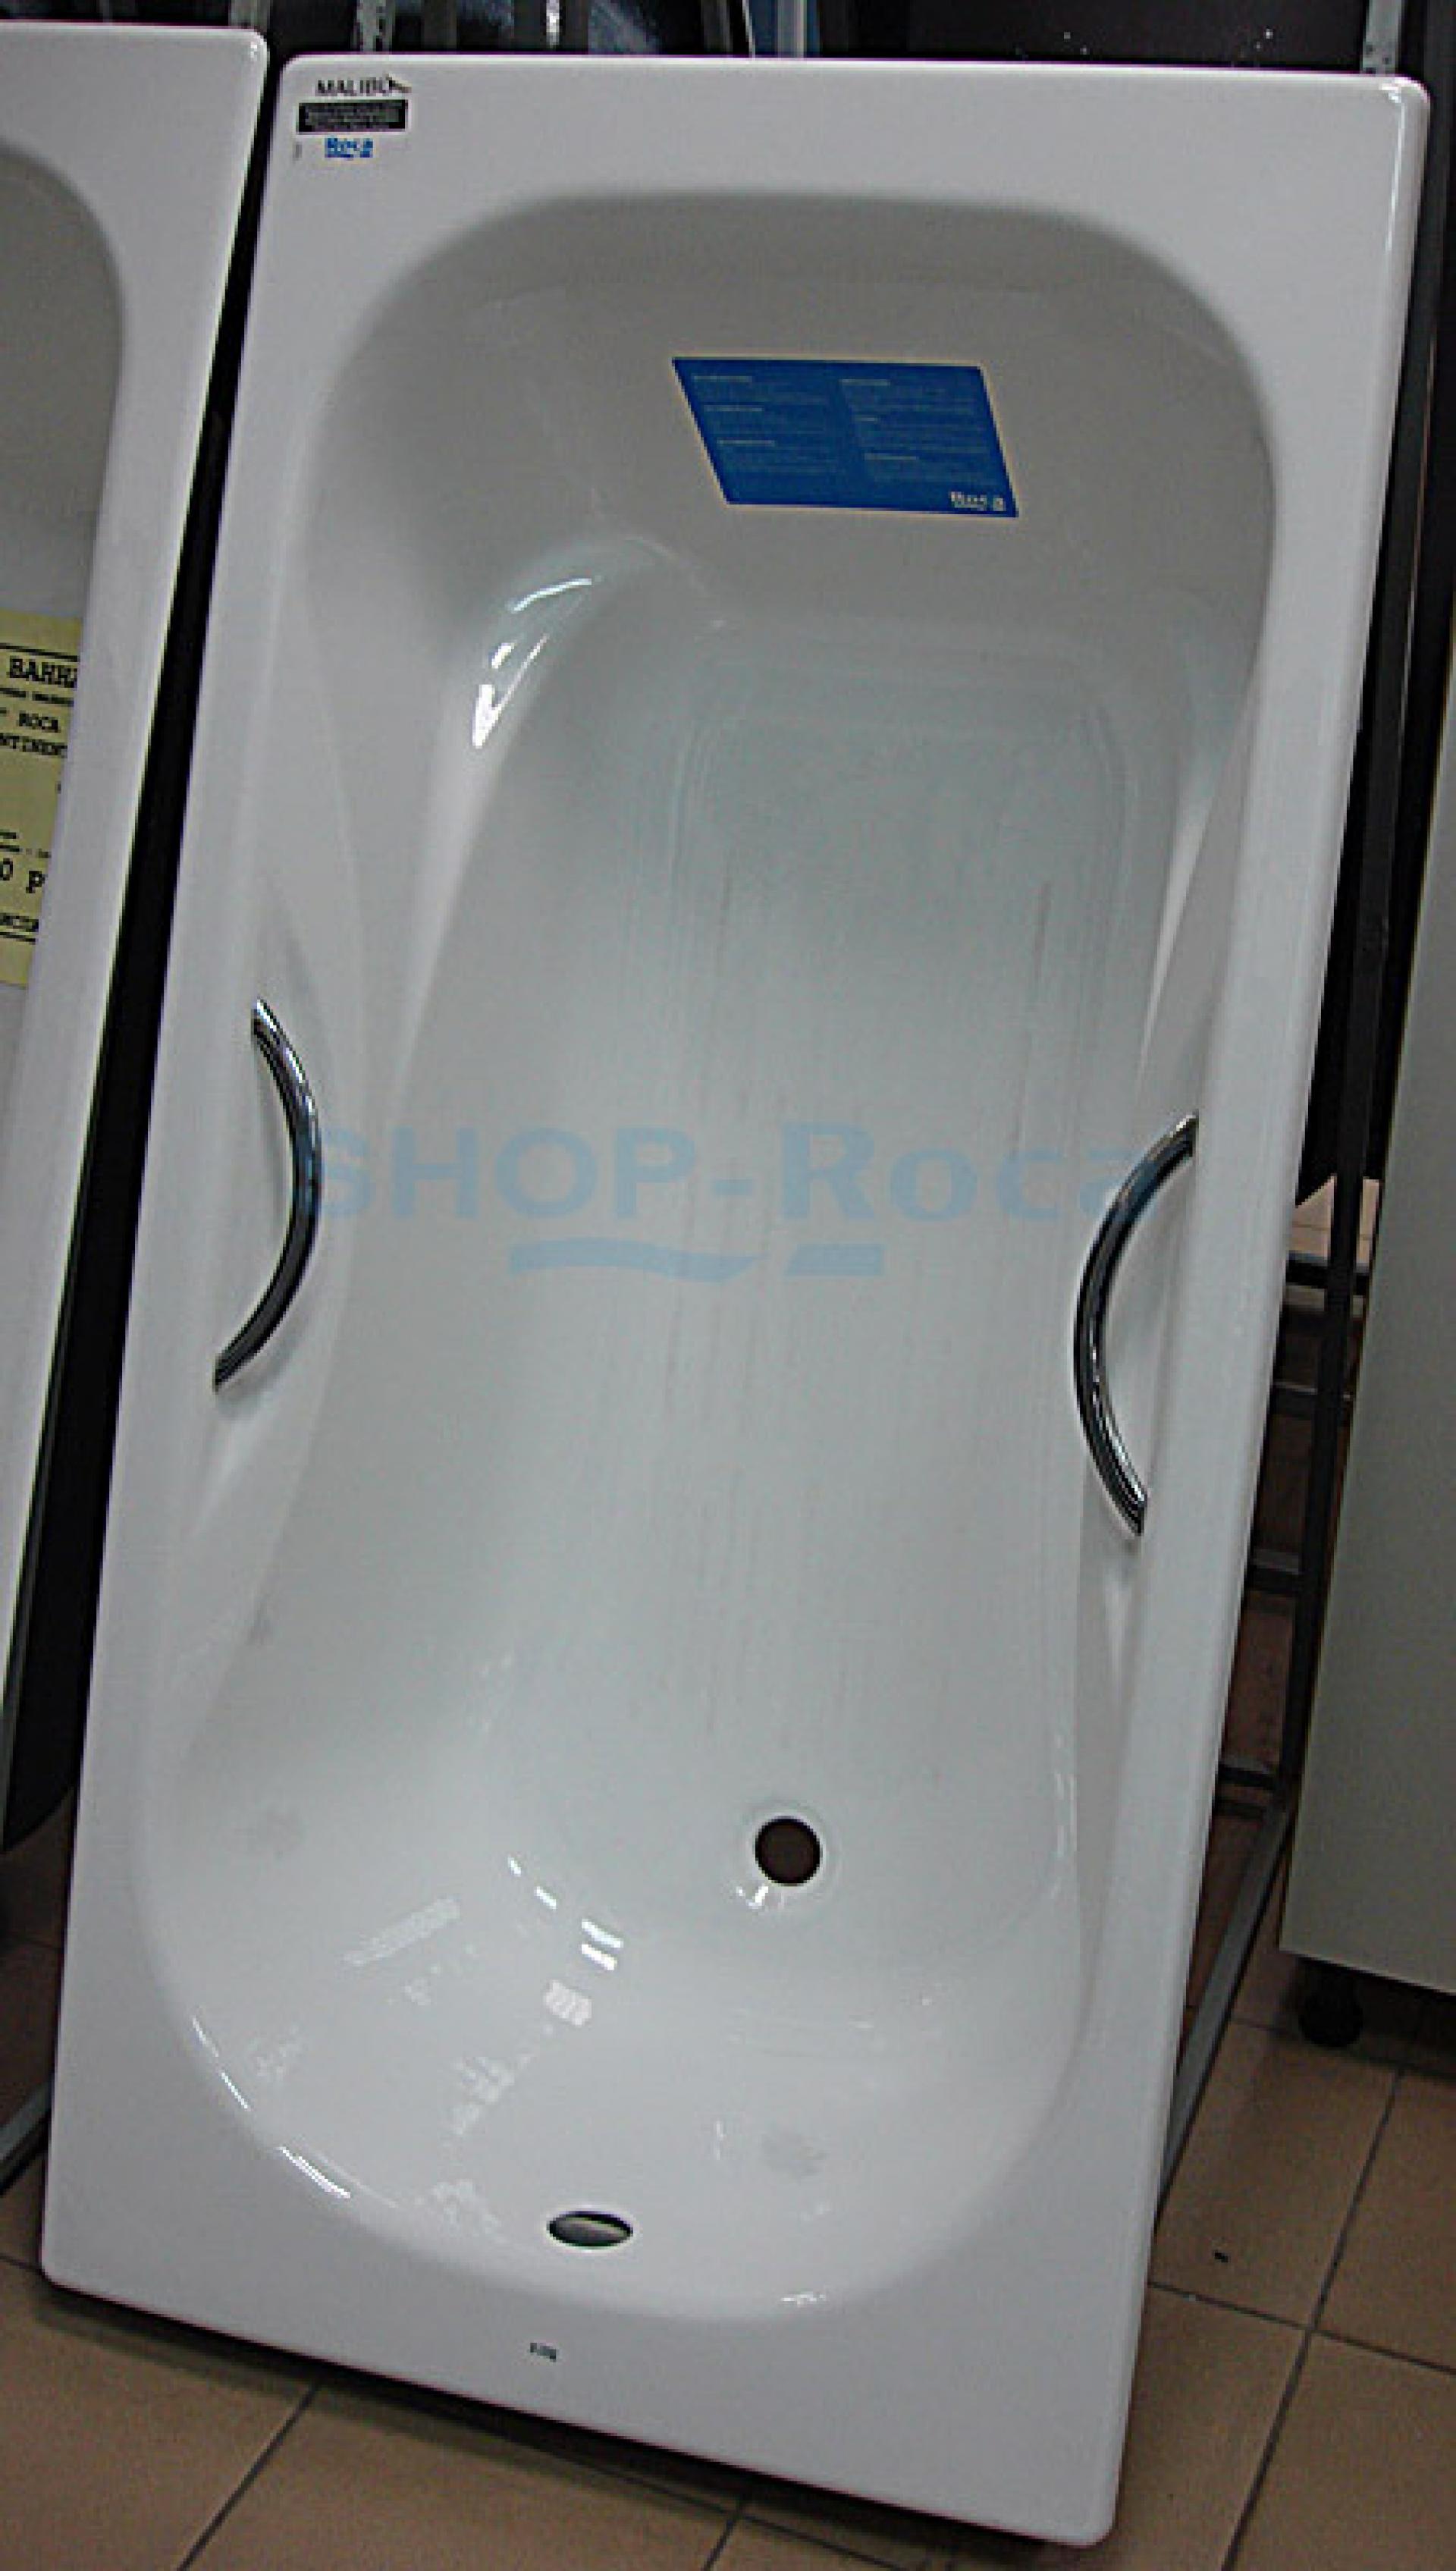 Фото: Чугунная ванна 170х75 Roca Malibu 23097000R с отверстиями для ручек Roca в каталоге